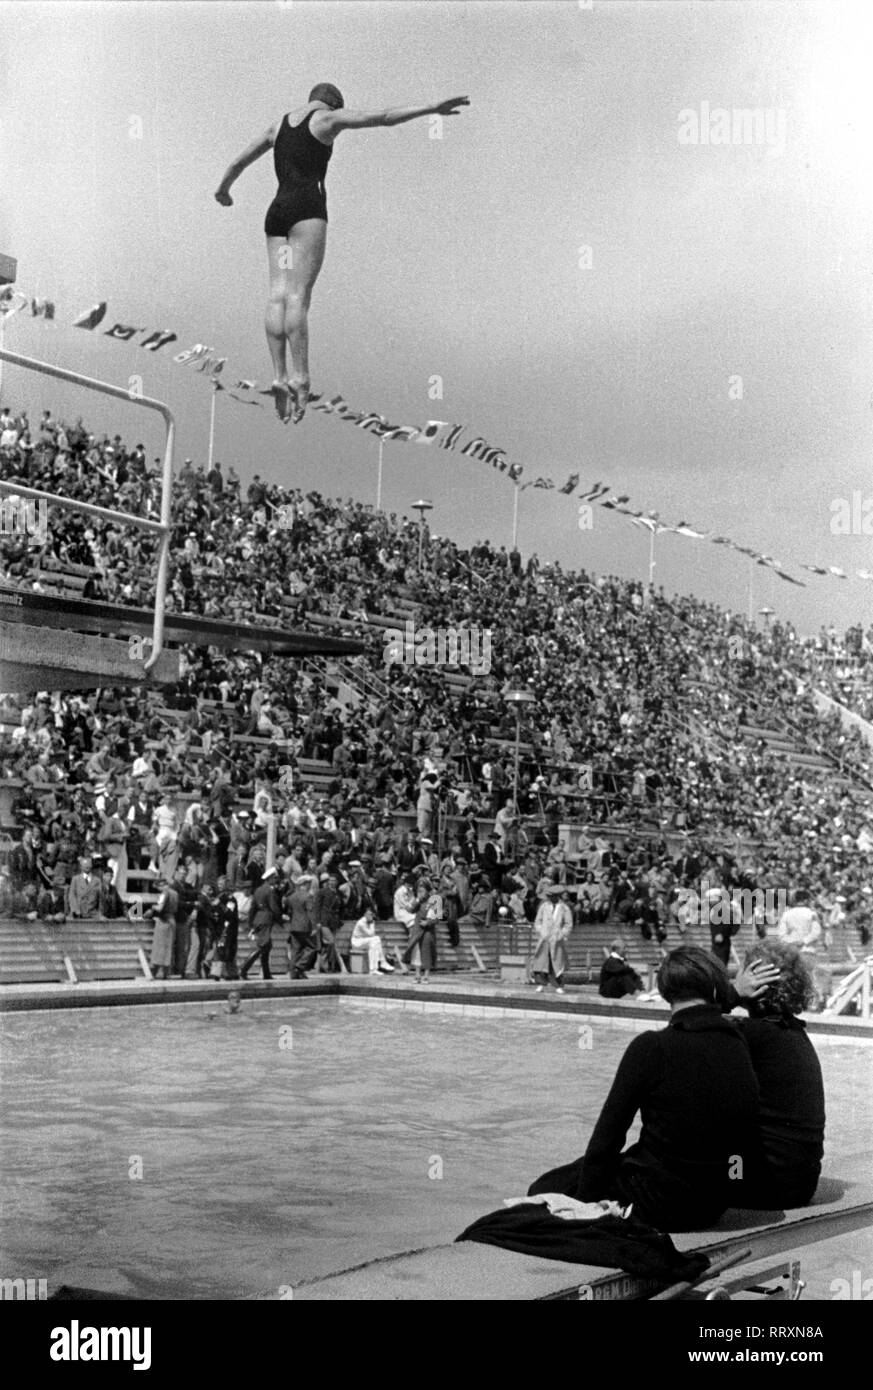 Jeux Olympiques d'été 1936 - L'Allemagne, Troisième Reich - Jeux Olympiques Jeux Olympiques d'été de 1936, à Berlin. Compétition de natation femmes au stade de natation - plate-forme diver - voir du saut. L'image date d'août 1936. Photo Erich Andres Banque D'Images